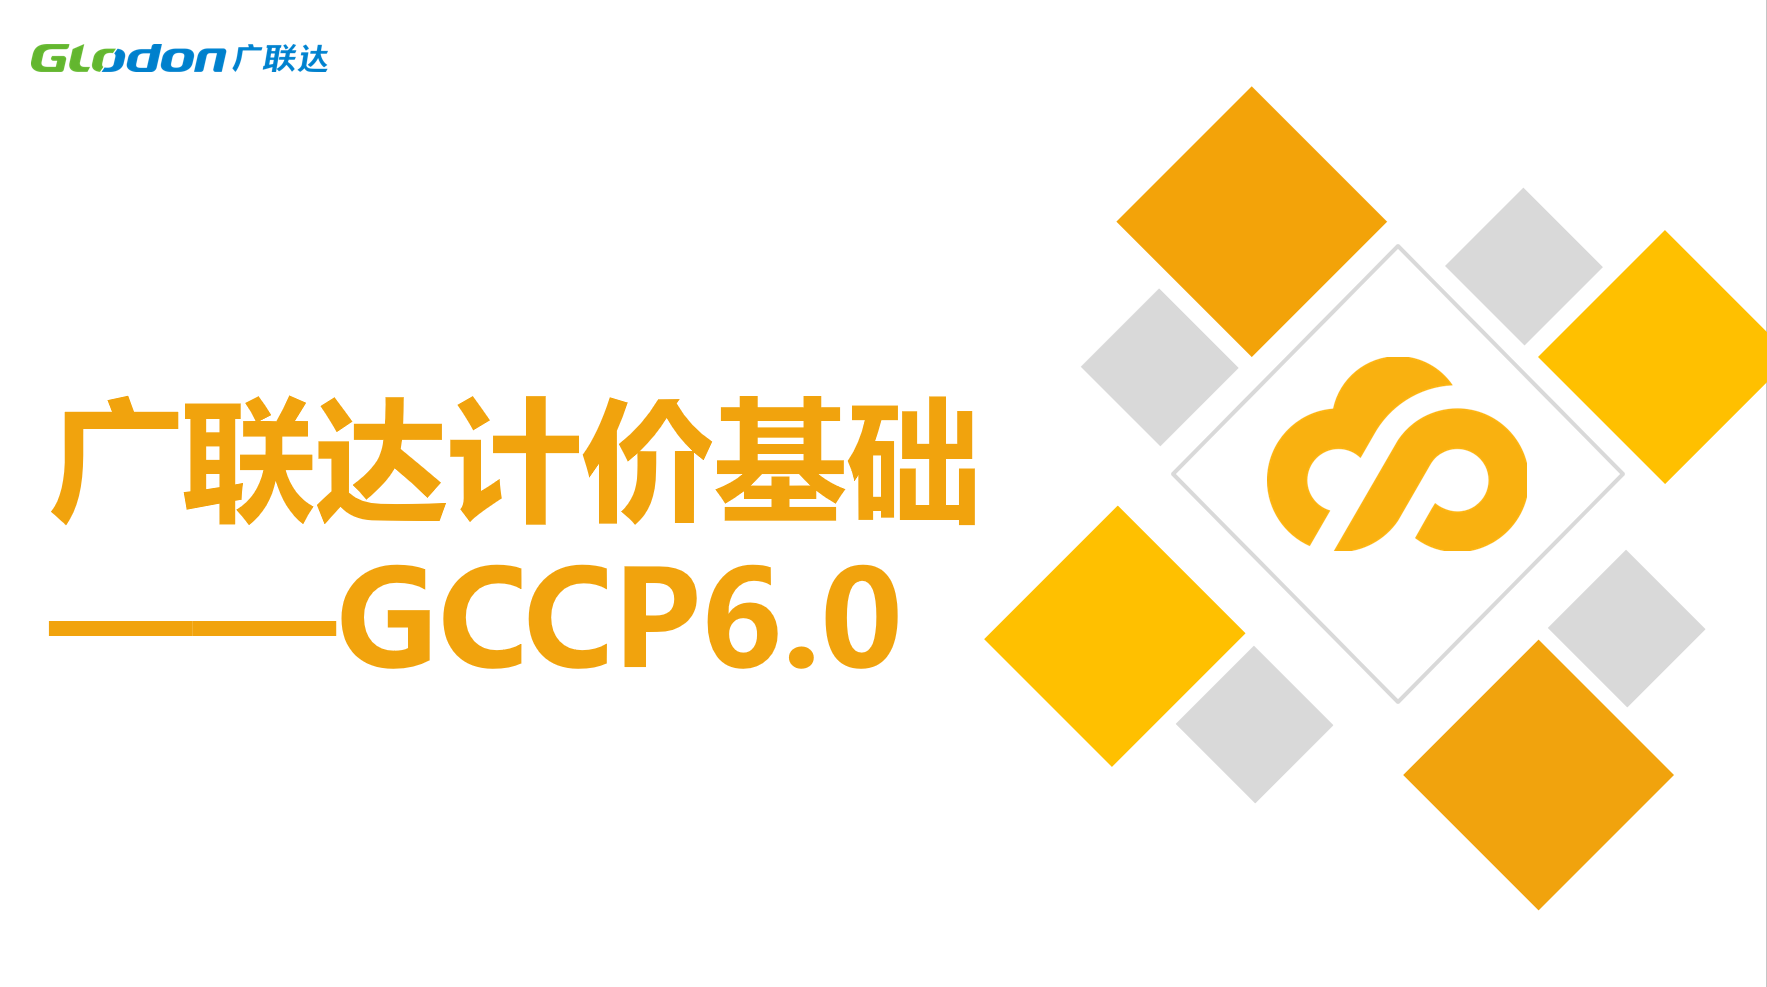 廣聯達計價基礎 ——GCCP6.0